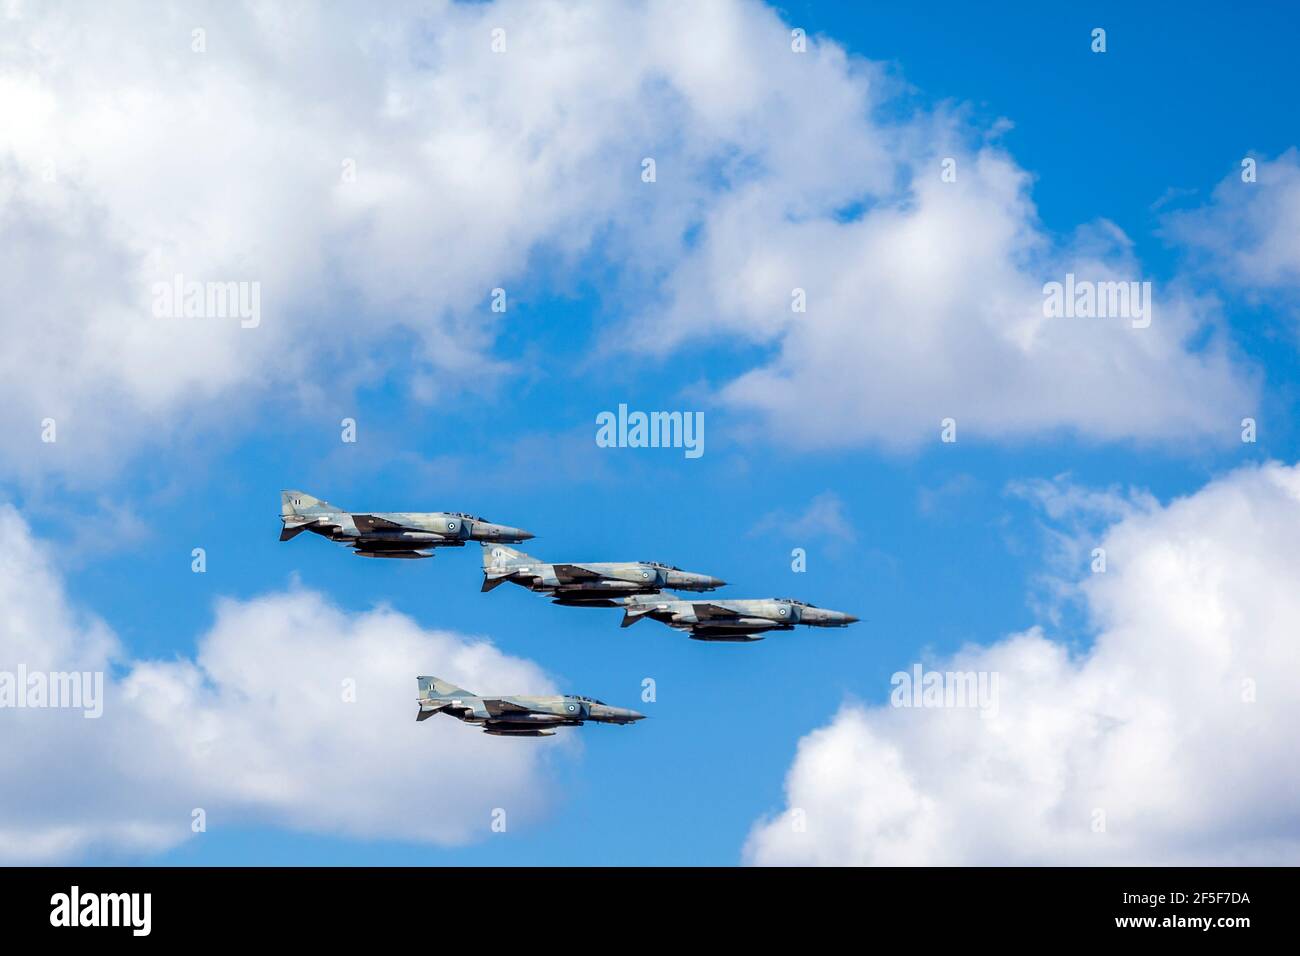 F-4 Phantom II, bombardiers supersoniques volant en formation au-dessus d'Athènes, pendant le défilé des 200 ans de la guerre d'indépendance grecque Banque D'Images